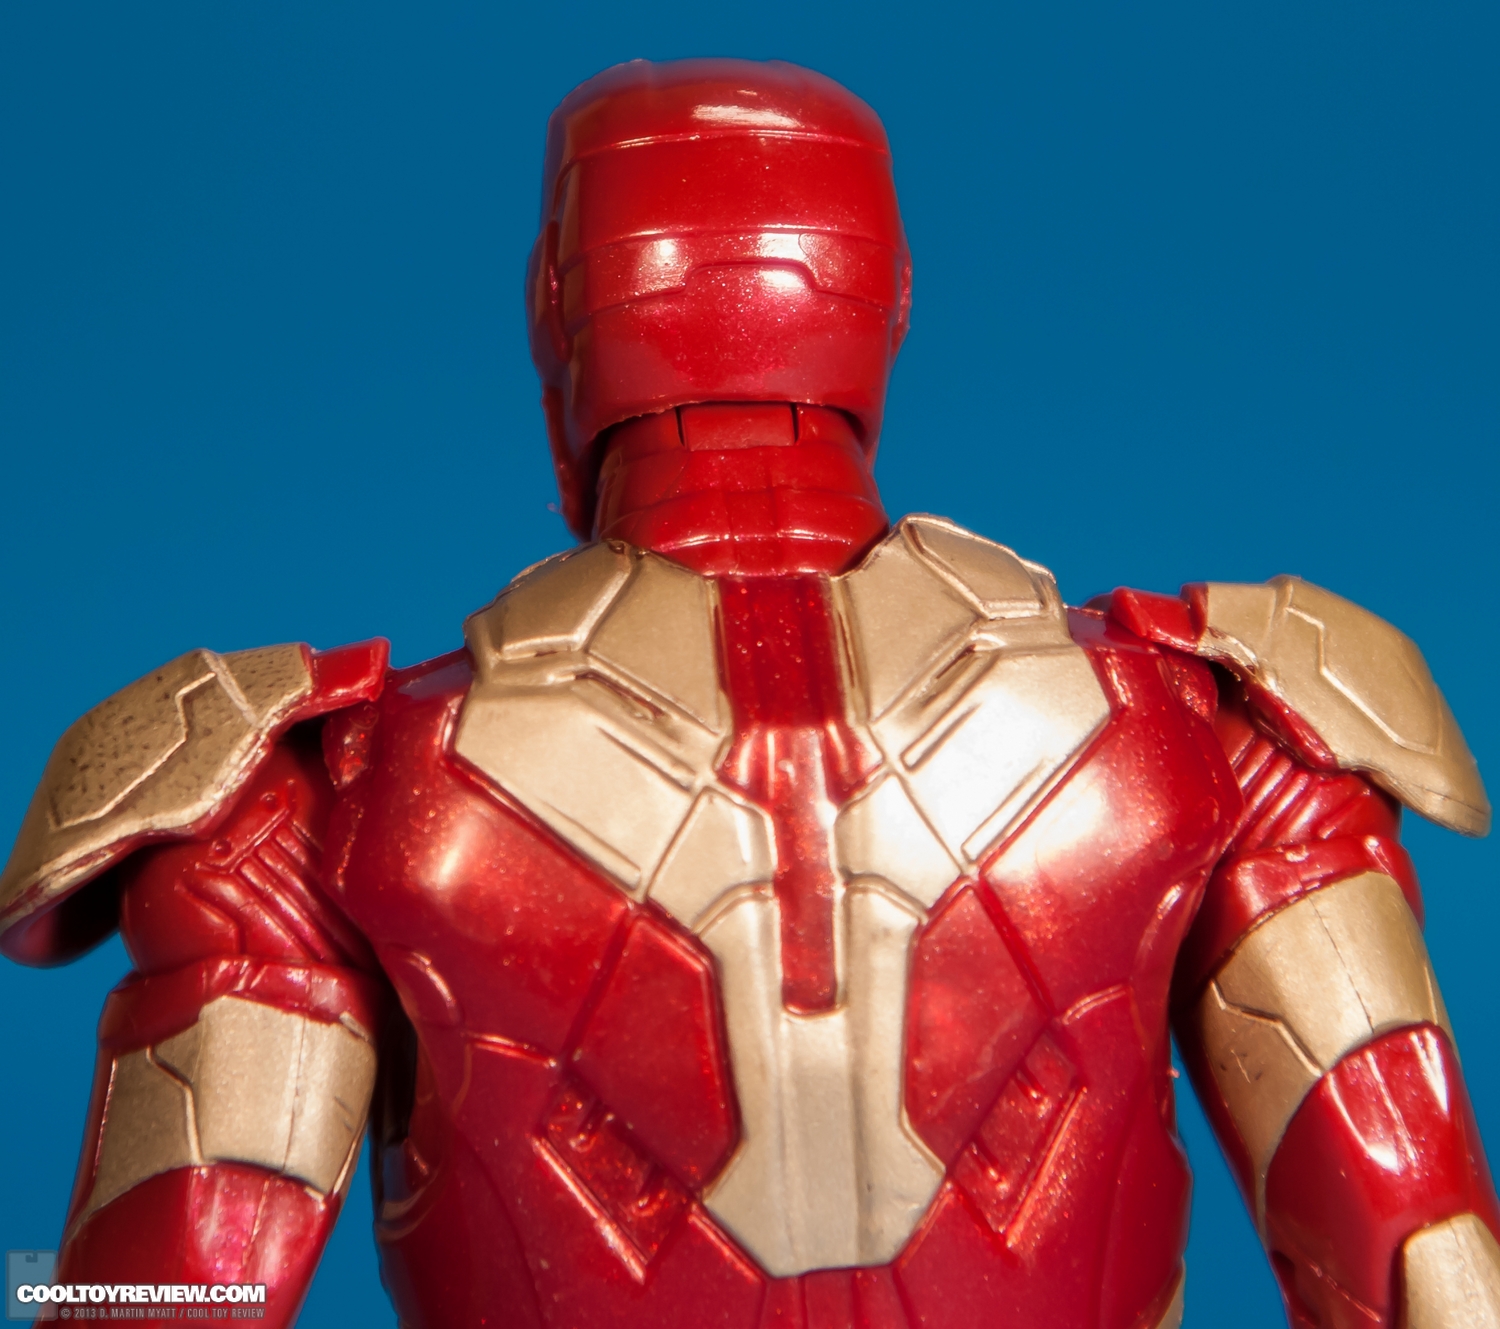 Iron-Man-Mark-42-Marvel-Legends-Iron-Monger-Series-008.jpg